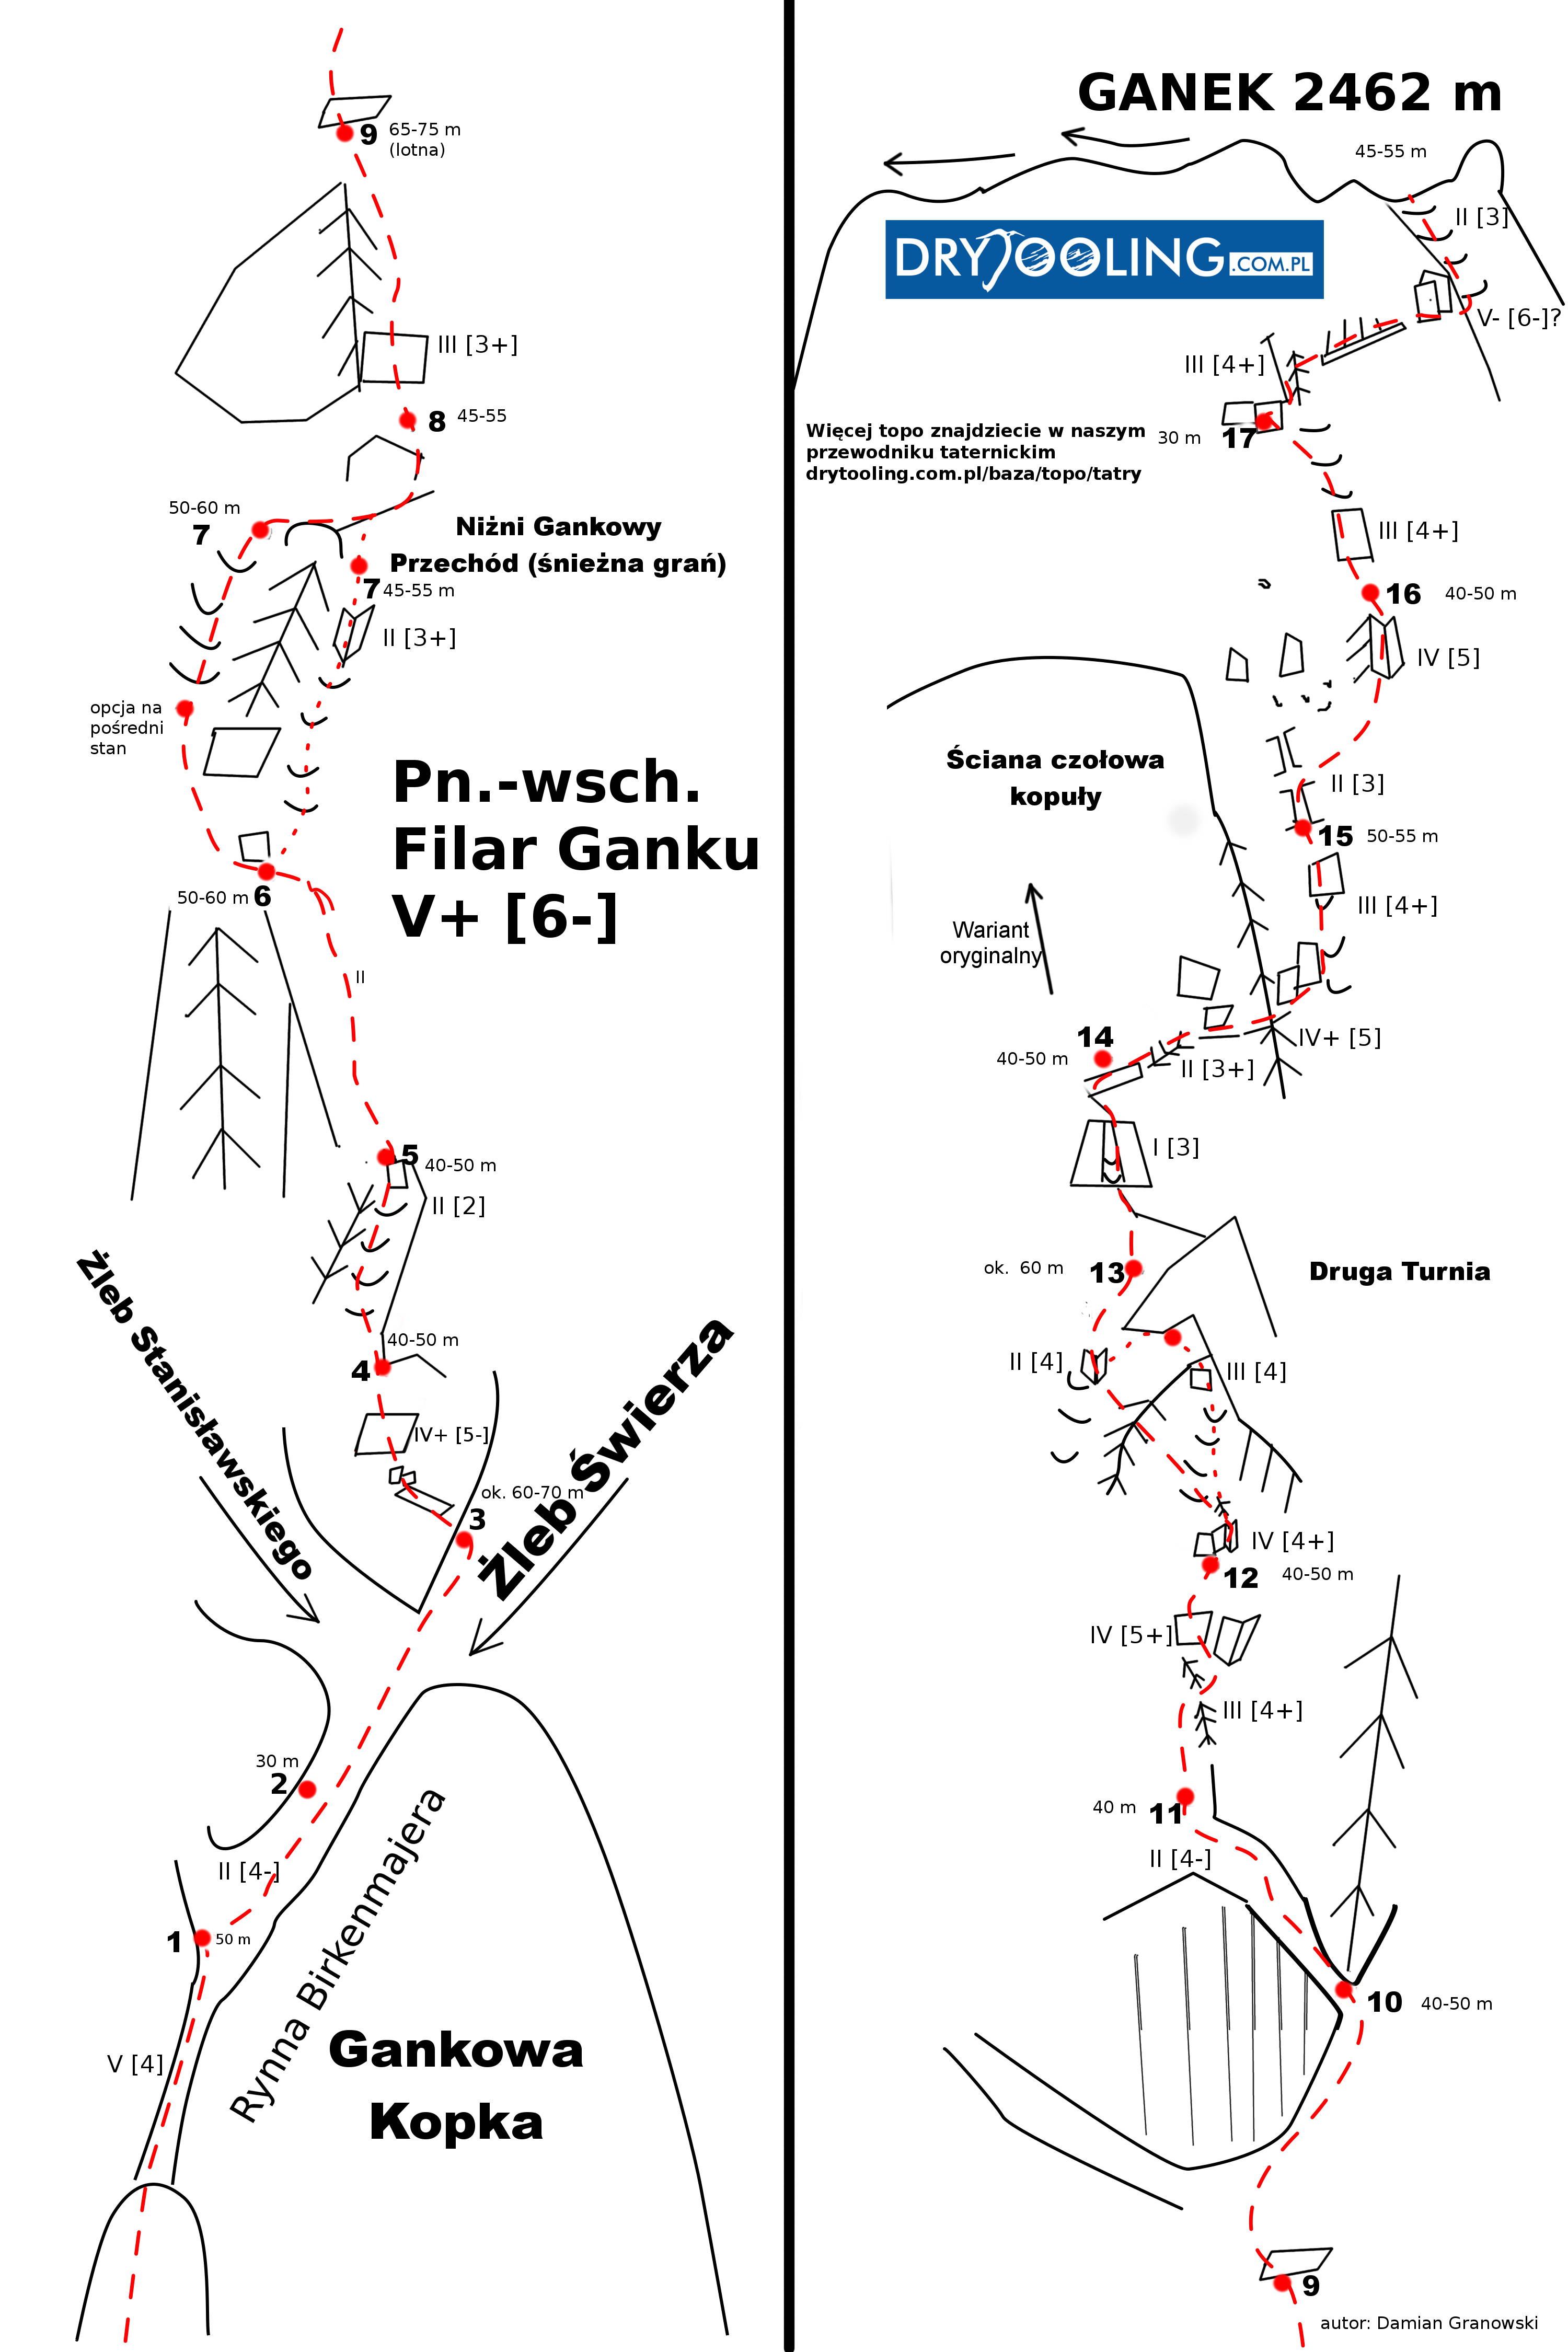 Схема маршрута Дамиана Грановского, в квадратных скобках зимние татранские категории 